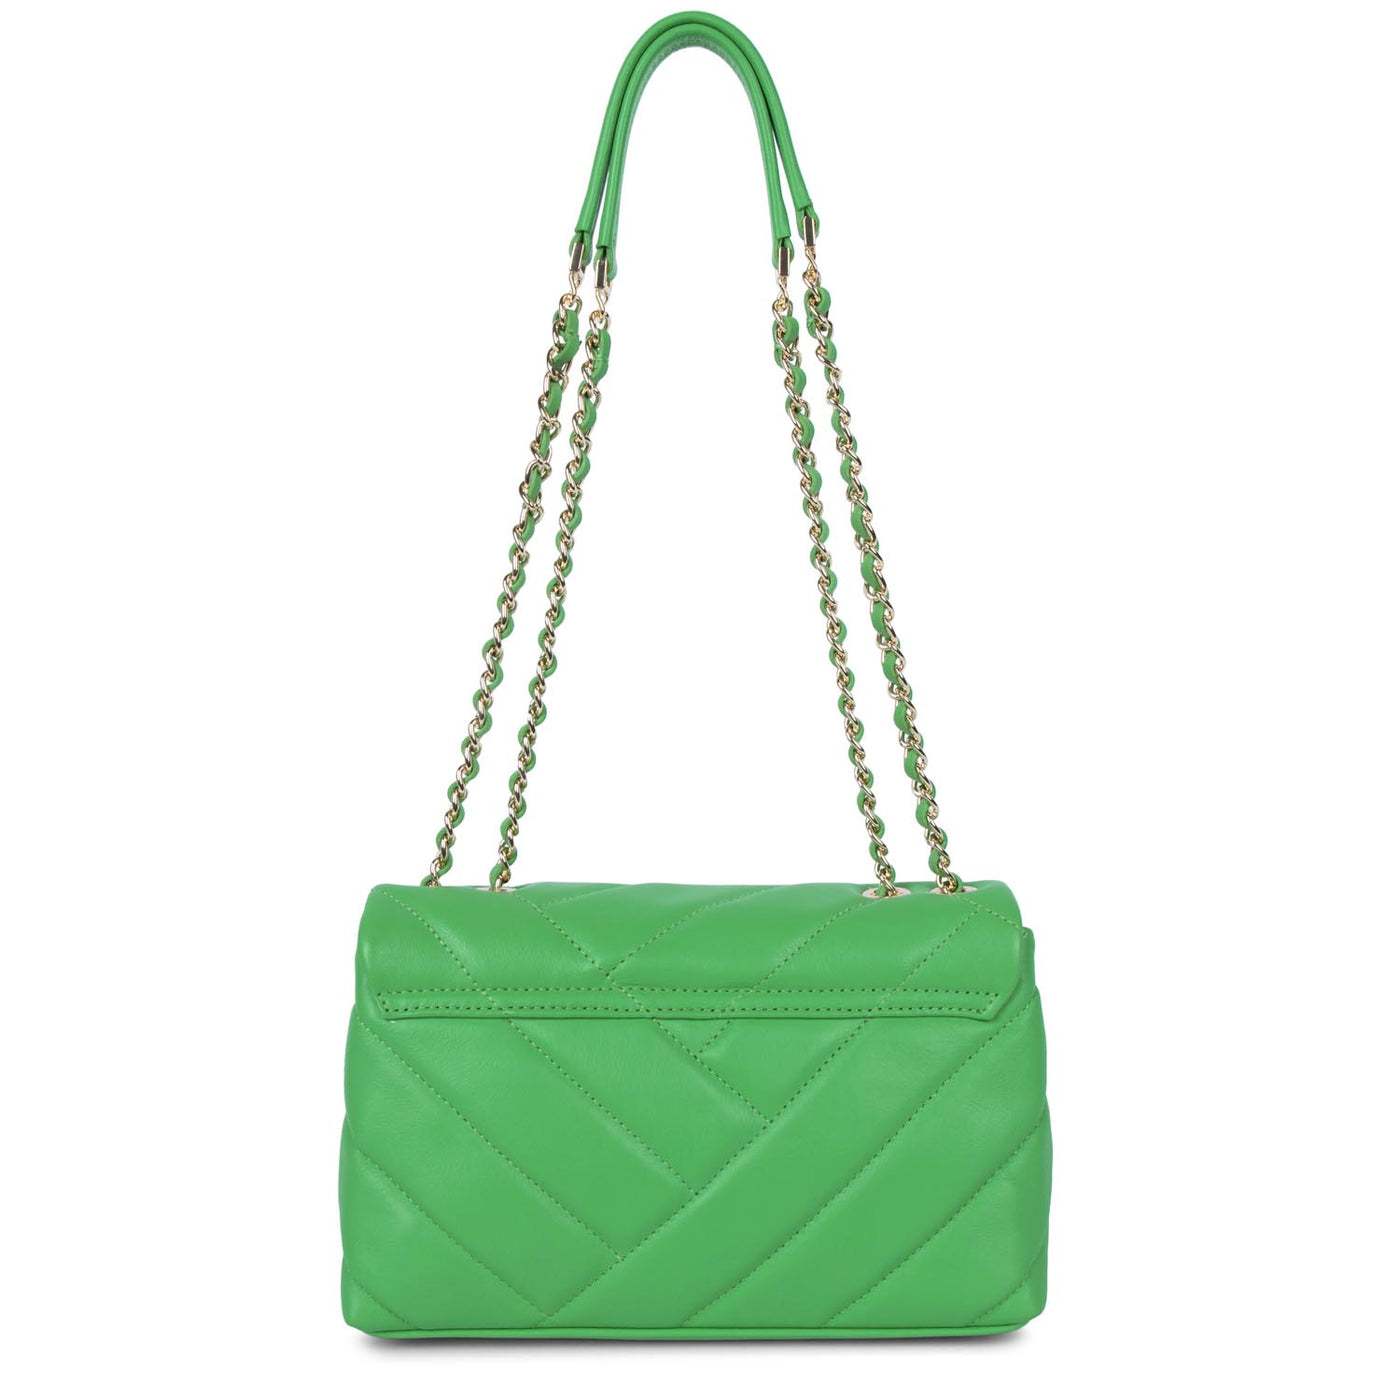 sac trotteur - soft matelassé #couleur_vert-colo